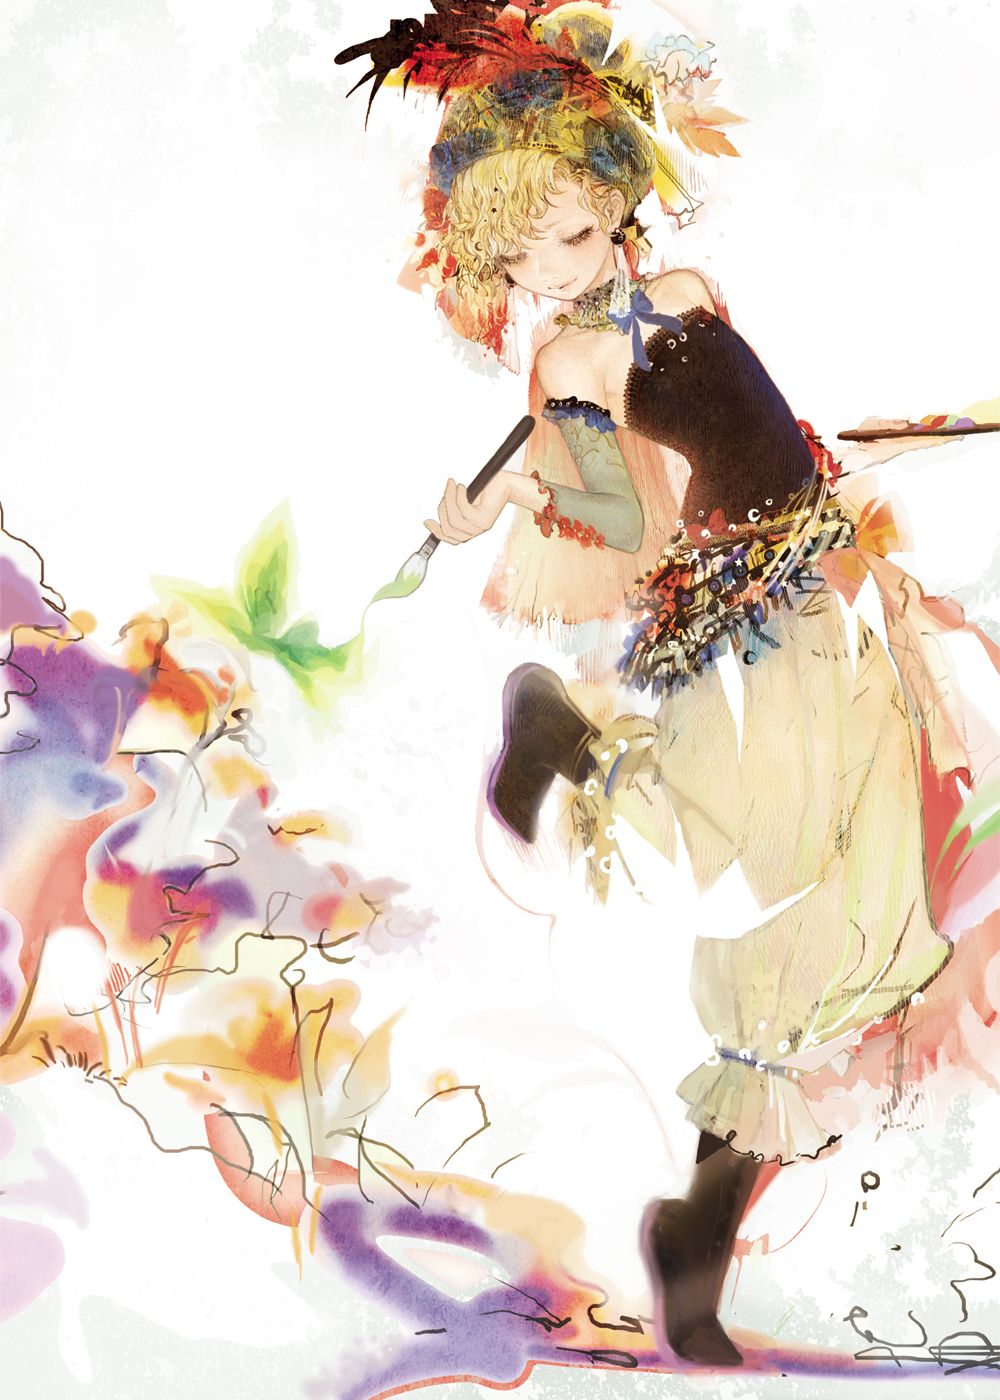 Final Fantasy VI Anime Image Board